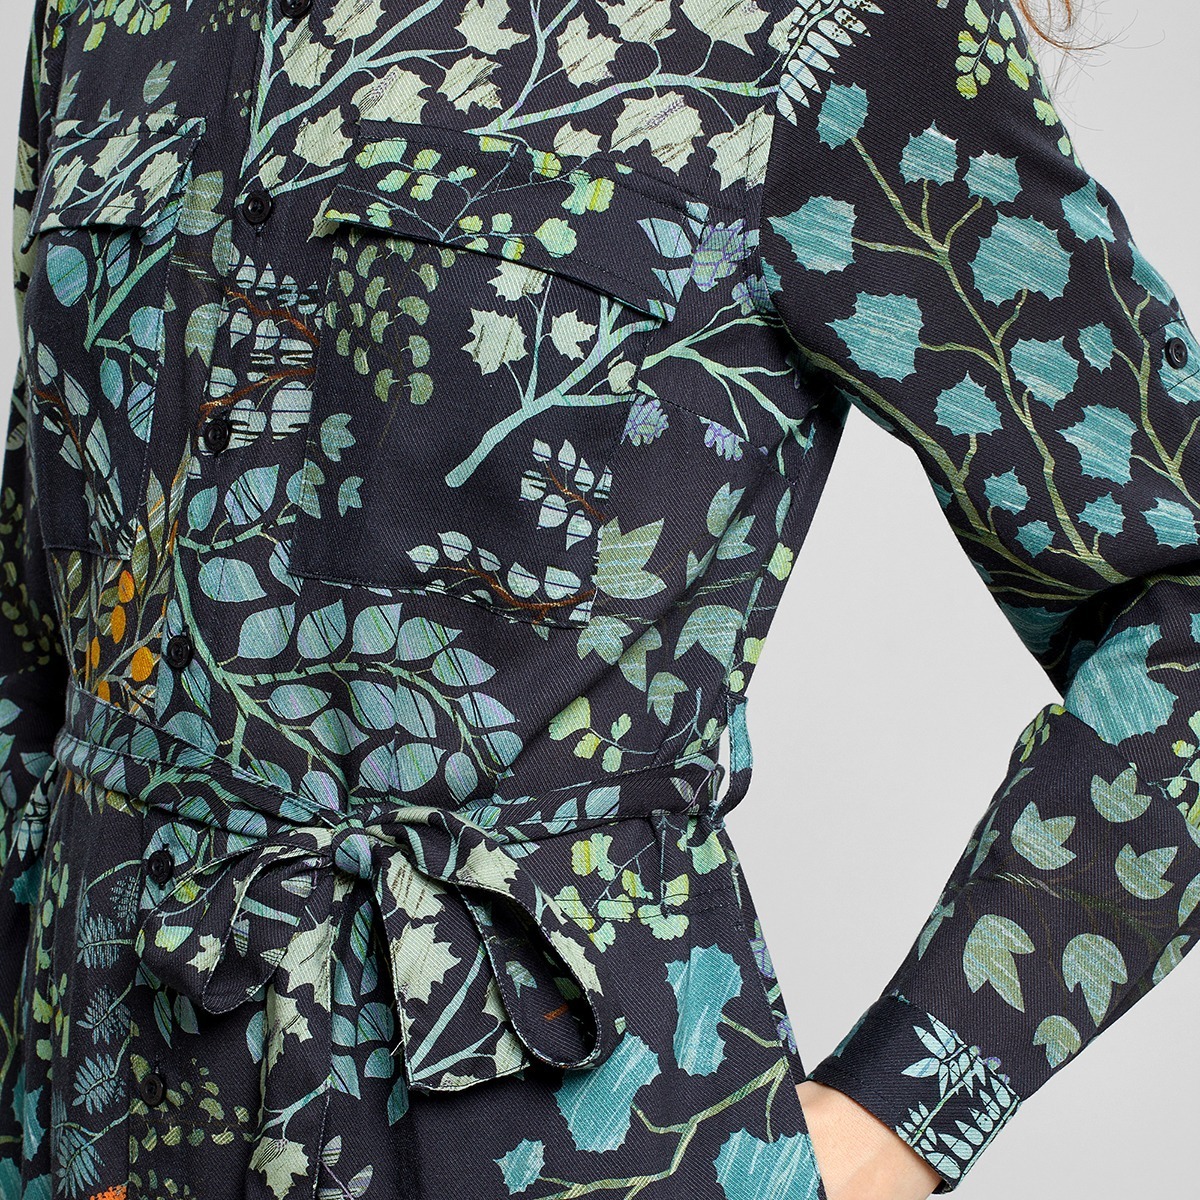 Schwarzes mit grünen Blättern bedrucktes Hemdblusenkleid von Dedicated aus 100% TENCEL™ Lyocell. Mit Hüfttaschen, Taillengürtel und durchgehender Knopfleiste.